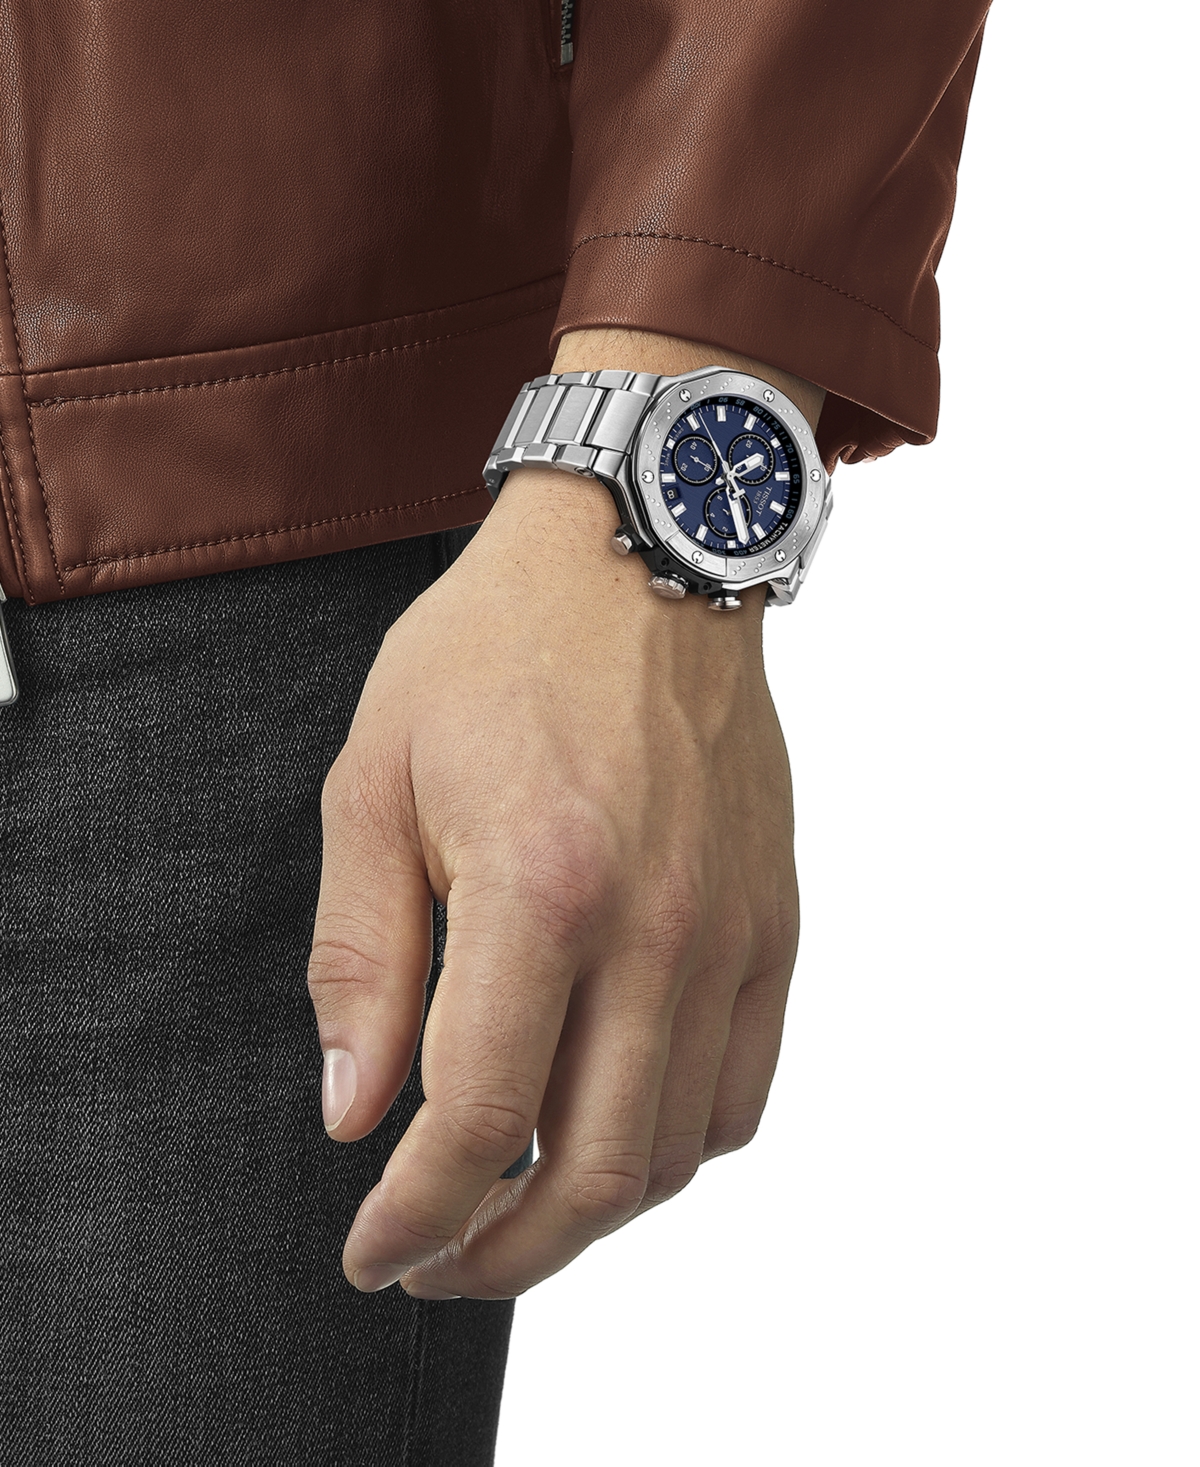 Shop Tissot Men's Swiss Chronograph T-race Stainless Steel Bracelet Watch 45mm In Grey